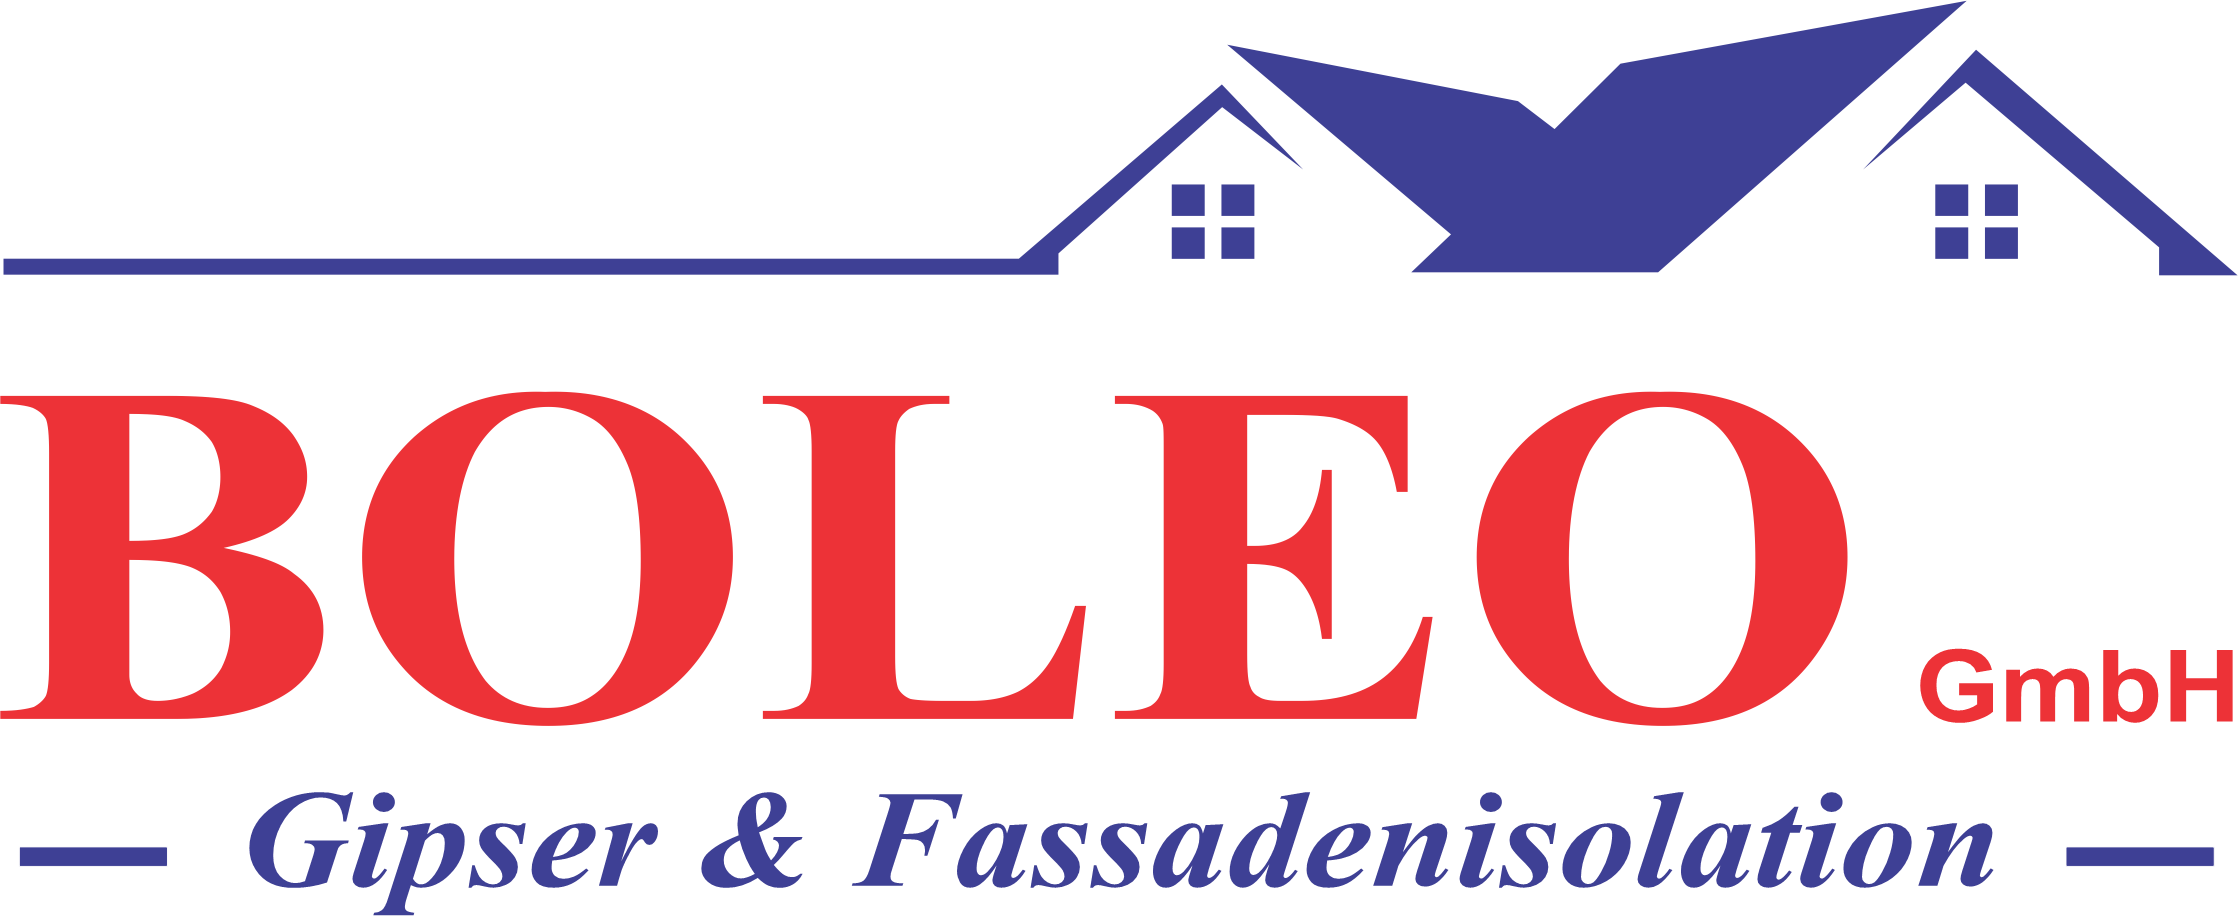 BOLEO GmbH Logo